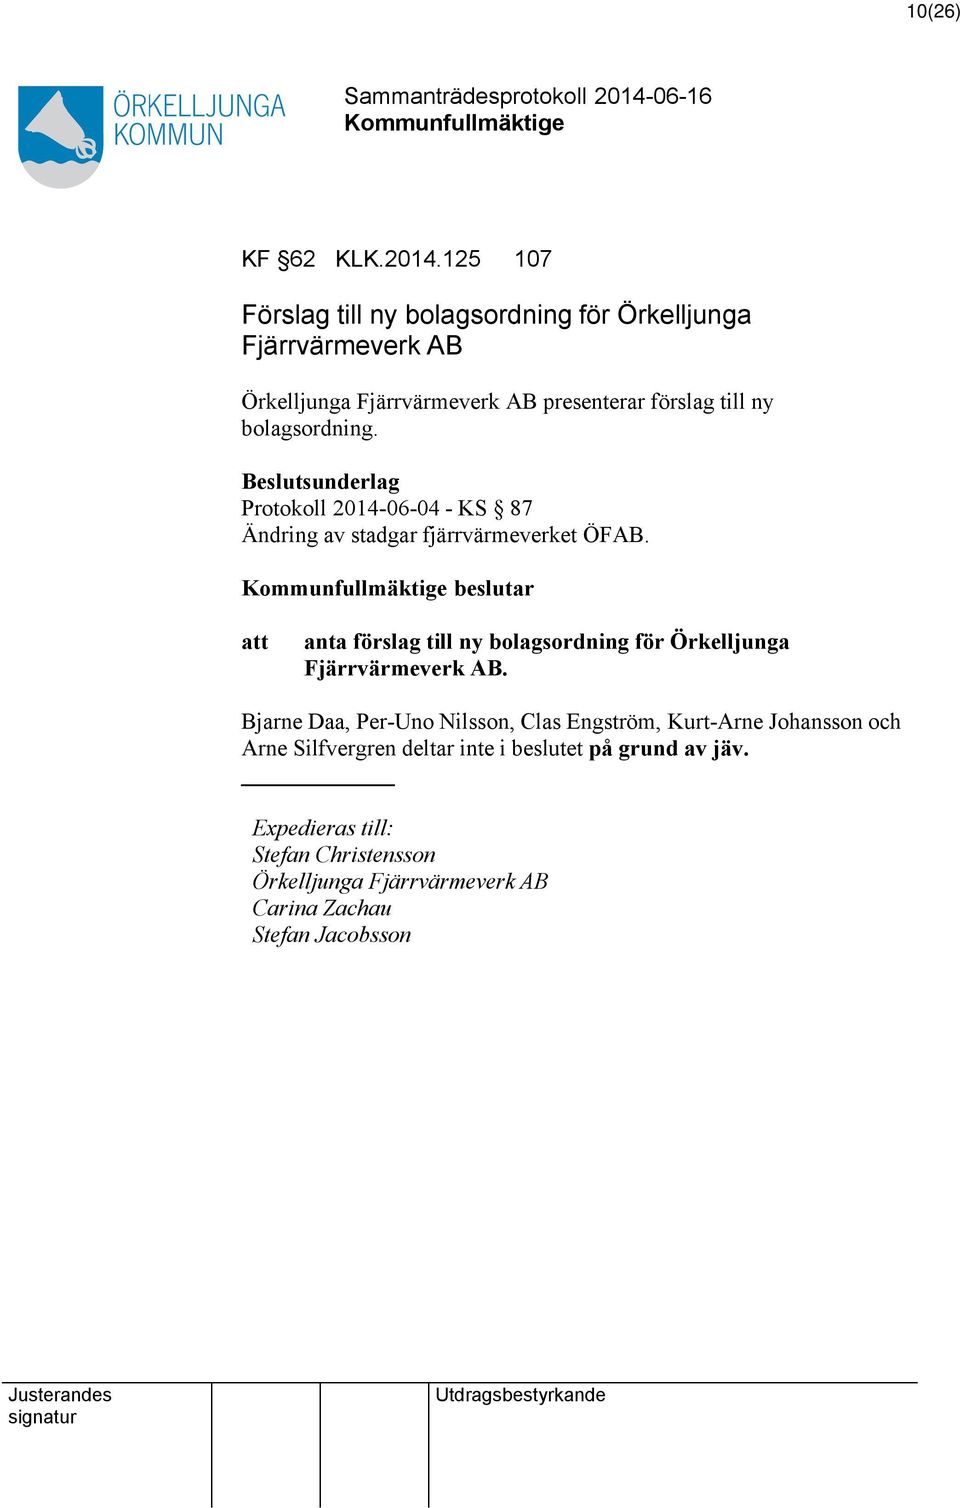 bolagsordning. Protokoll 2014-06-04 - KS 87 Ändring av stadgar fjärrvärmeverket ÖFAB.